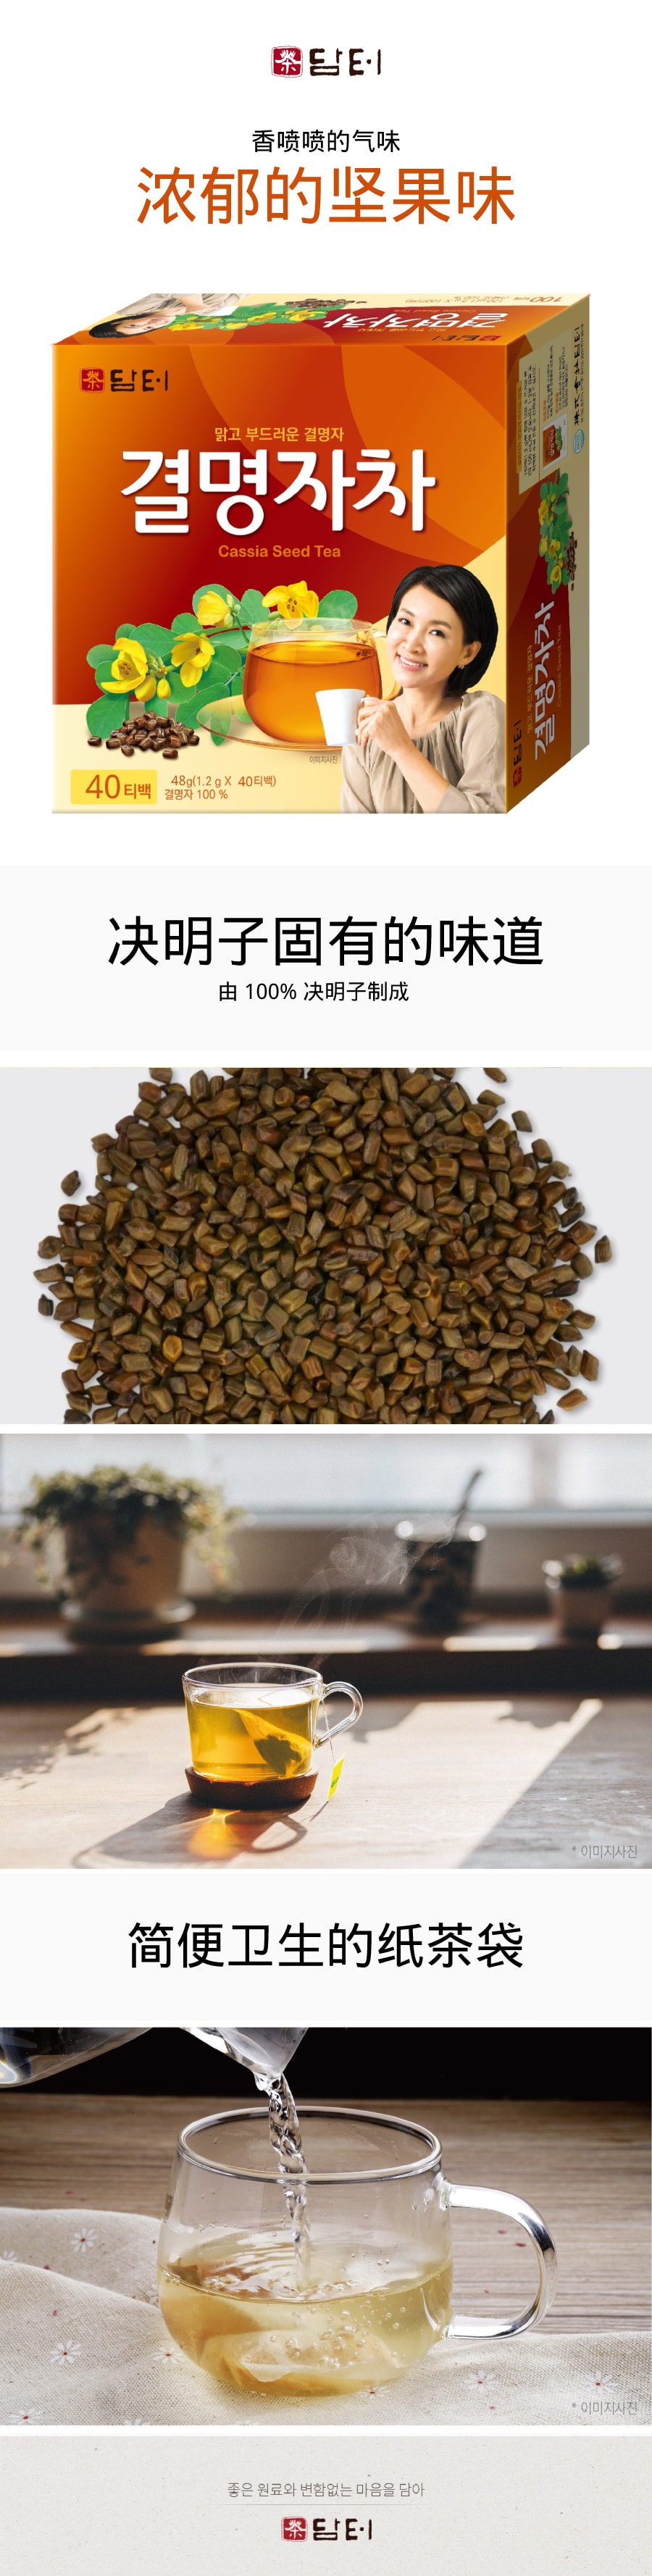 韩国DAMTUH丹特 浓郁的坚果味決明子茶 40条入 60g x 2个